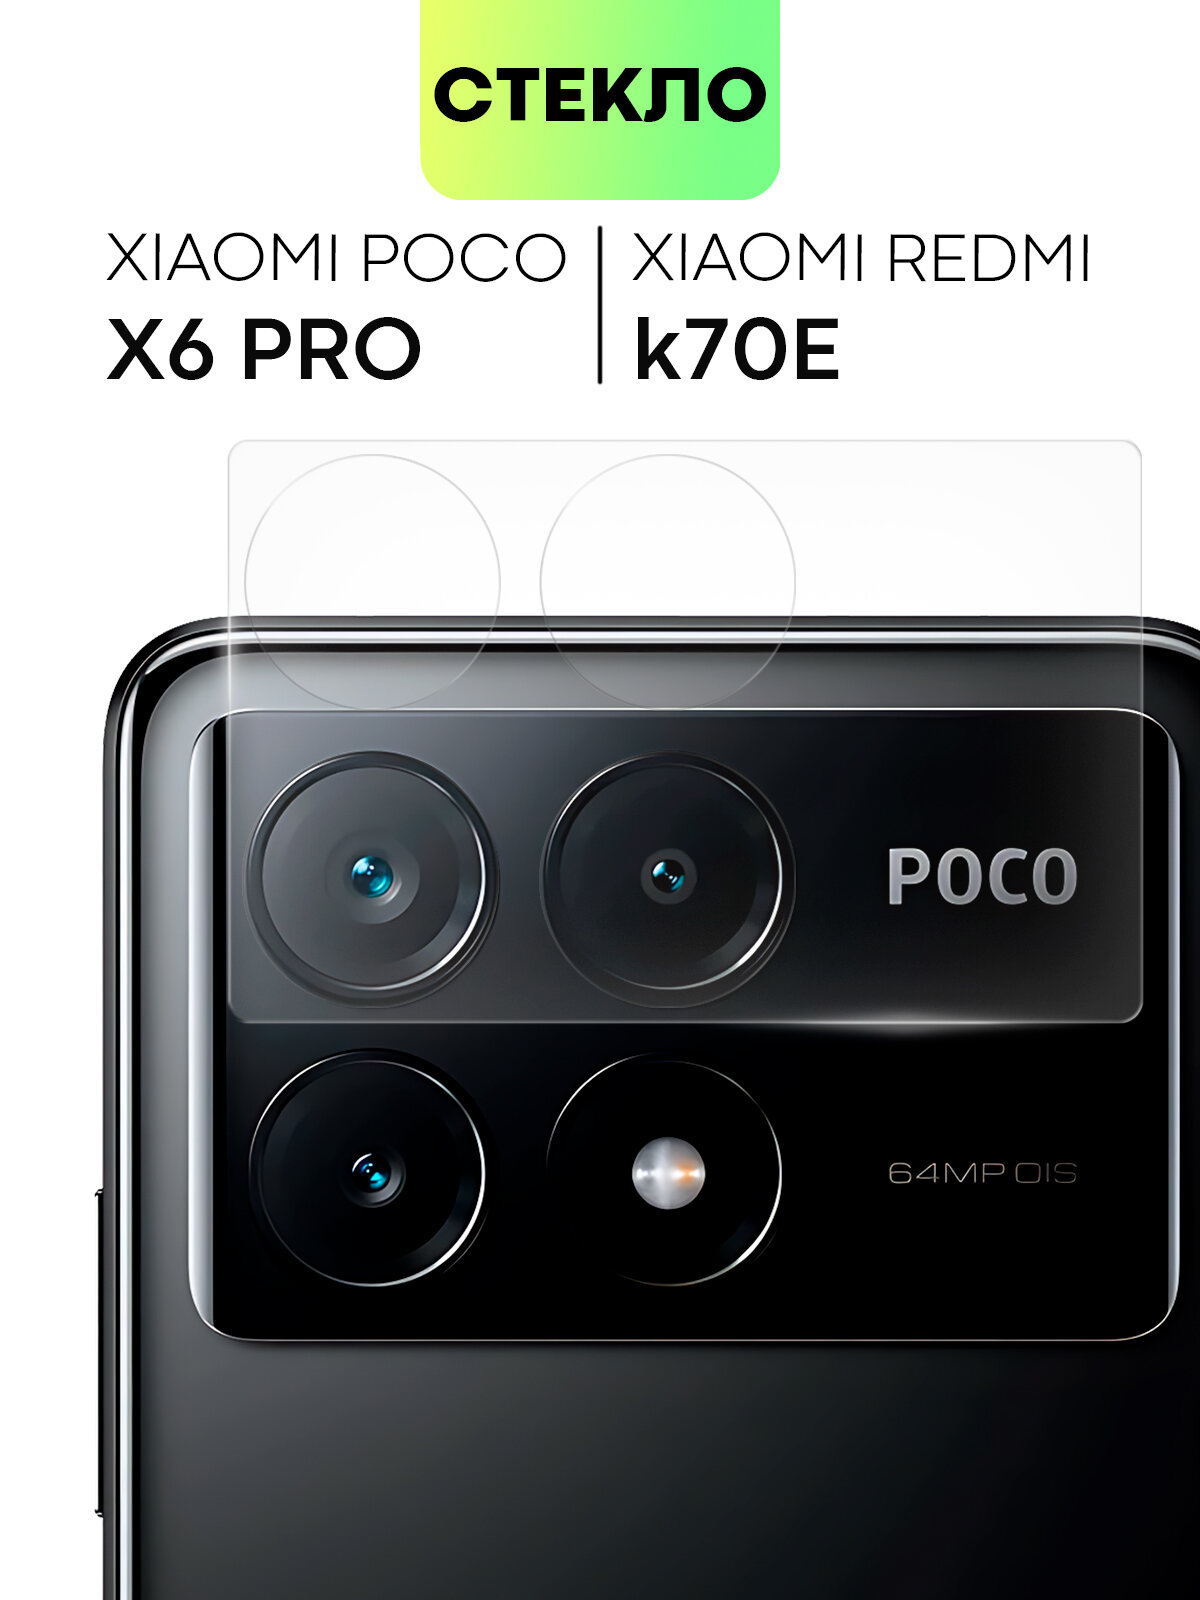 Стекло на камеру телефона Xiaomi Poco X6 Pro и Redmi K70E (Поко Икс 6 Про Редми К70Е) защитное стекло для защиты модуля камер прозрачное BROSCORP